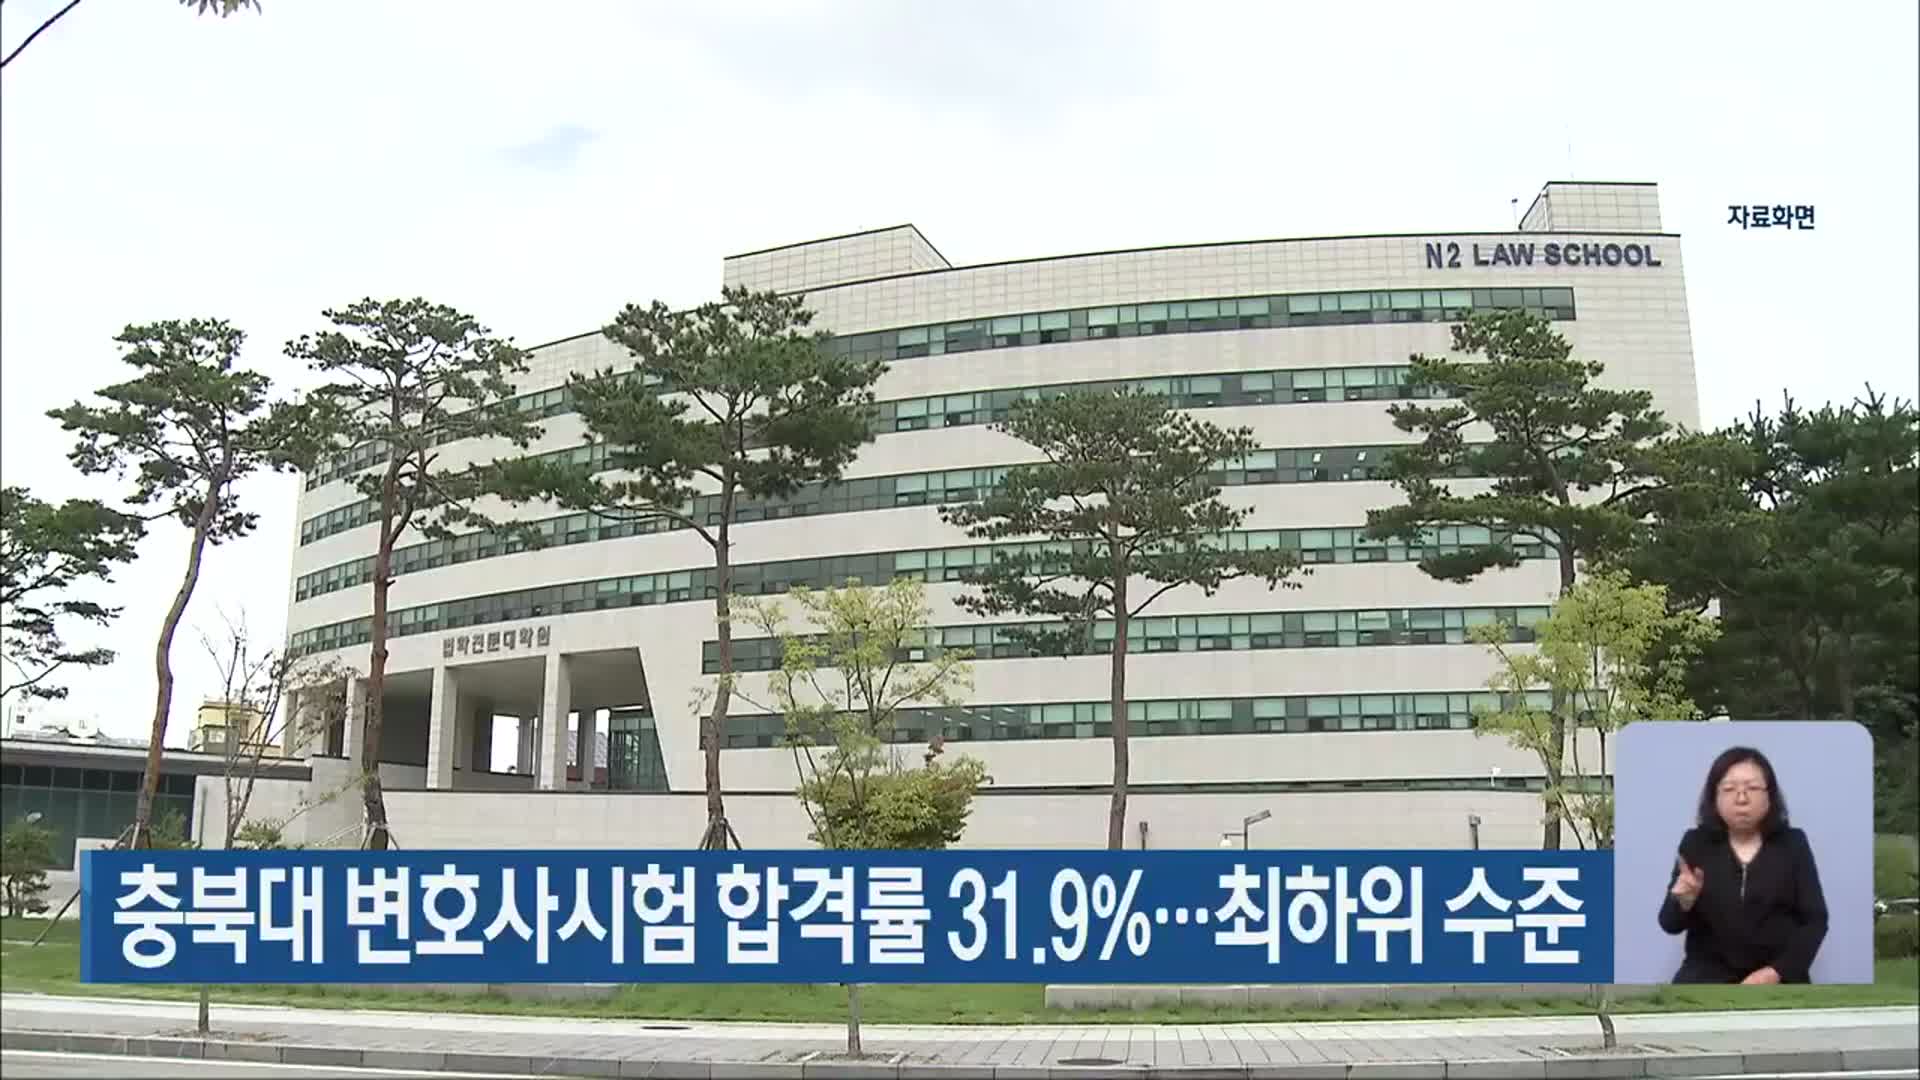 충북대 변호사시험 합격률 31.9%…최하위 수준